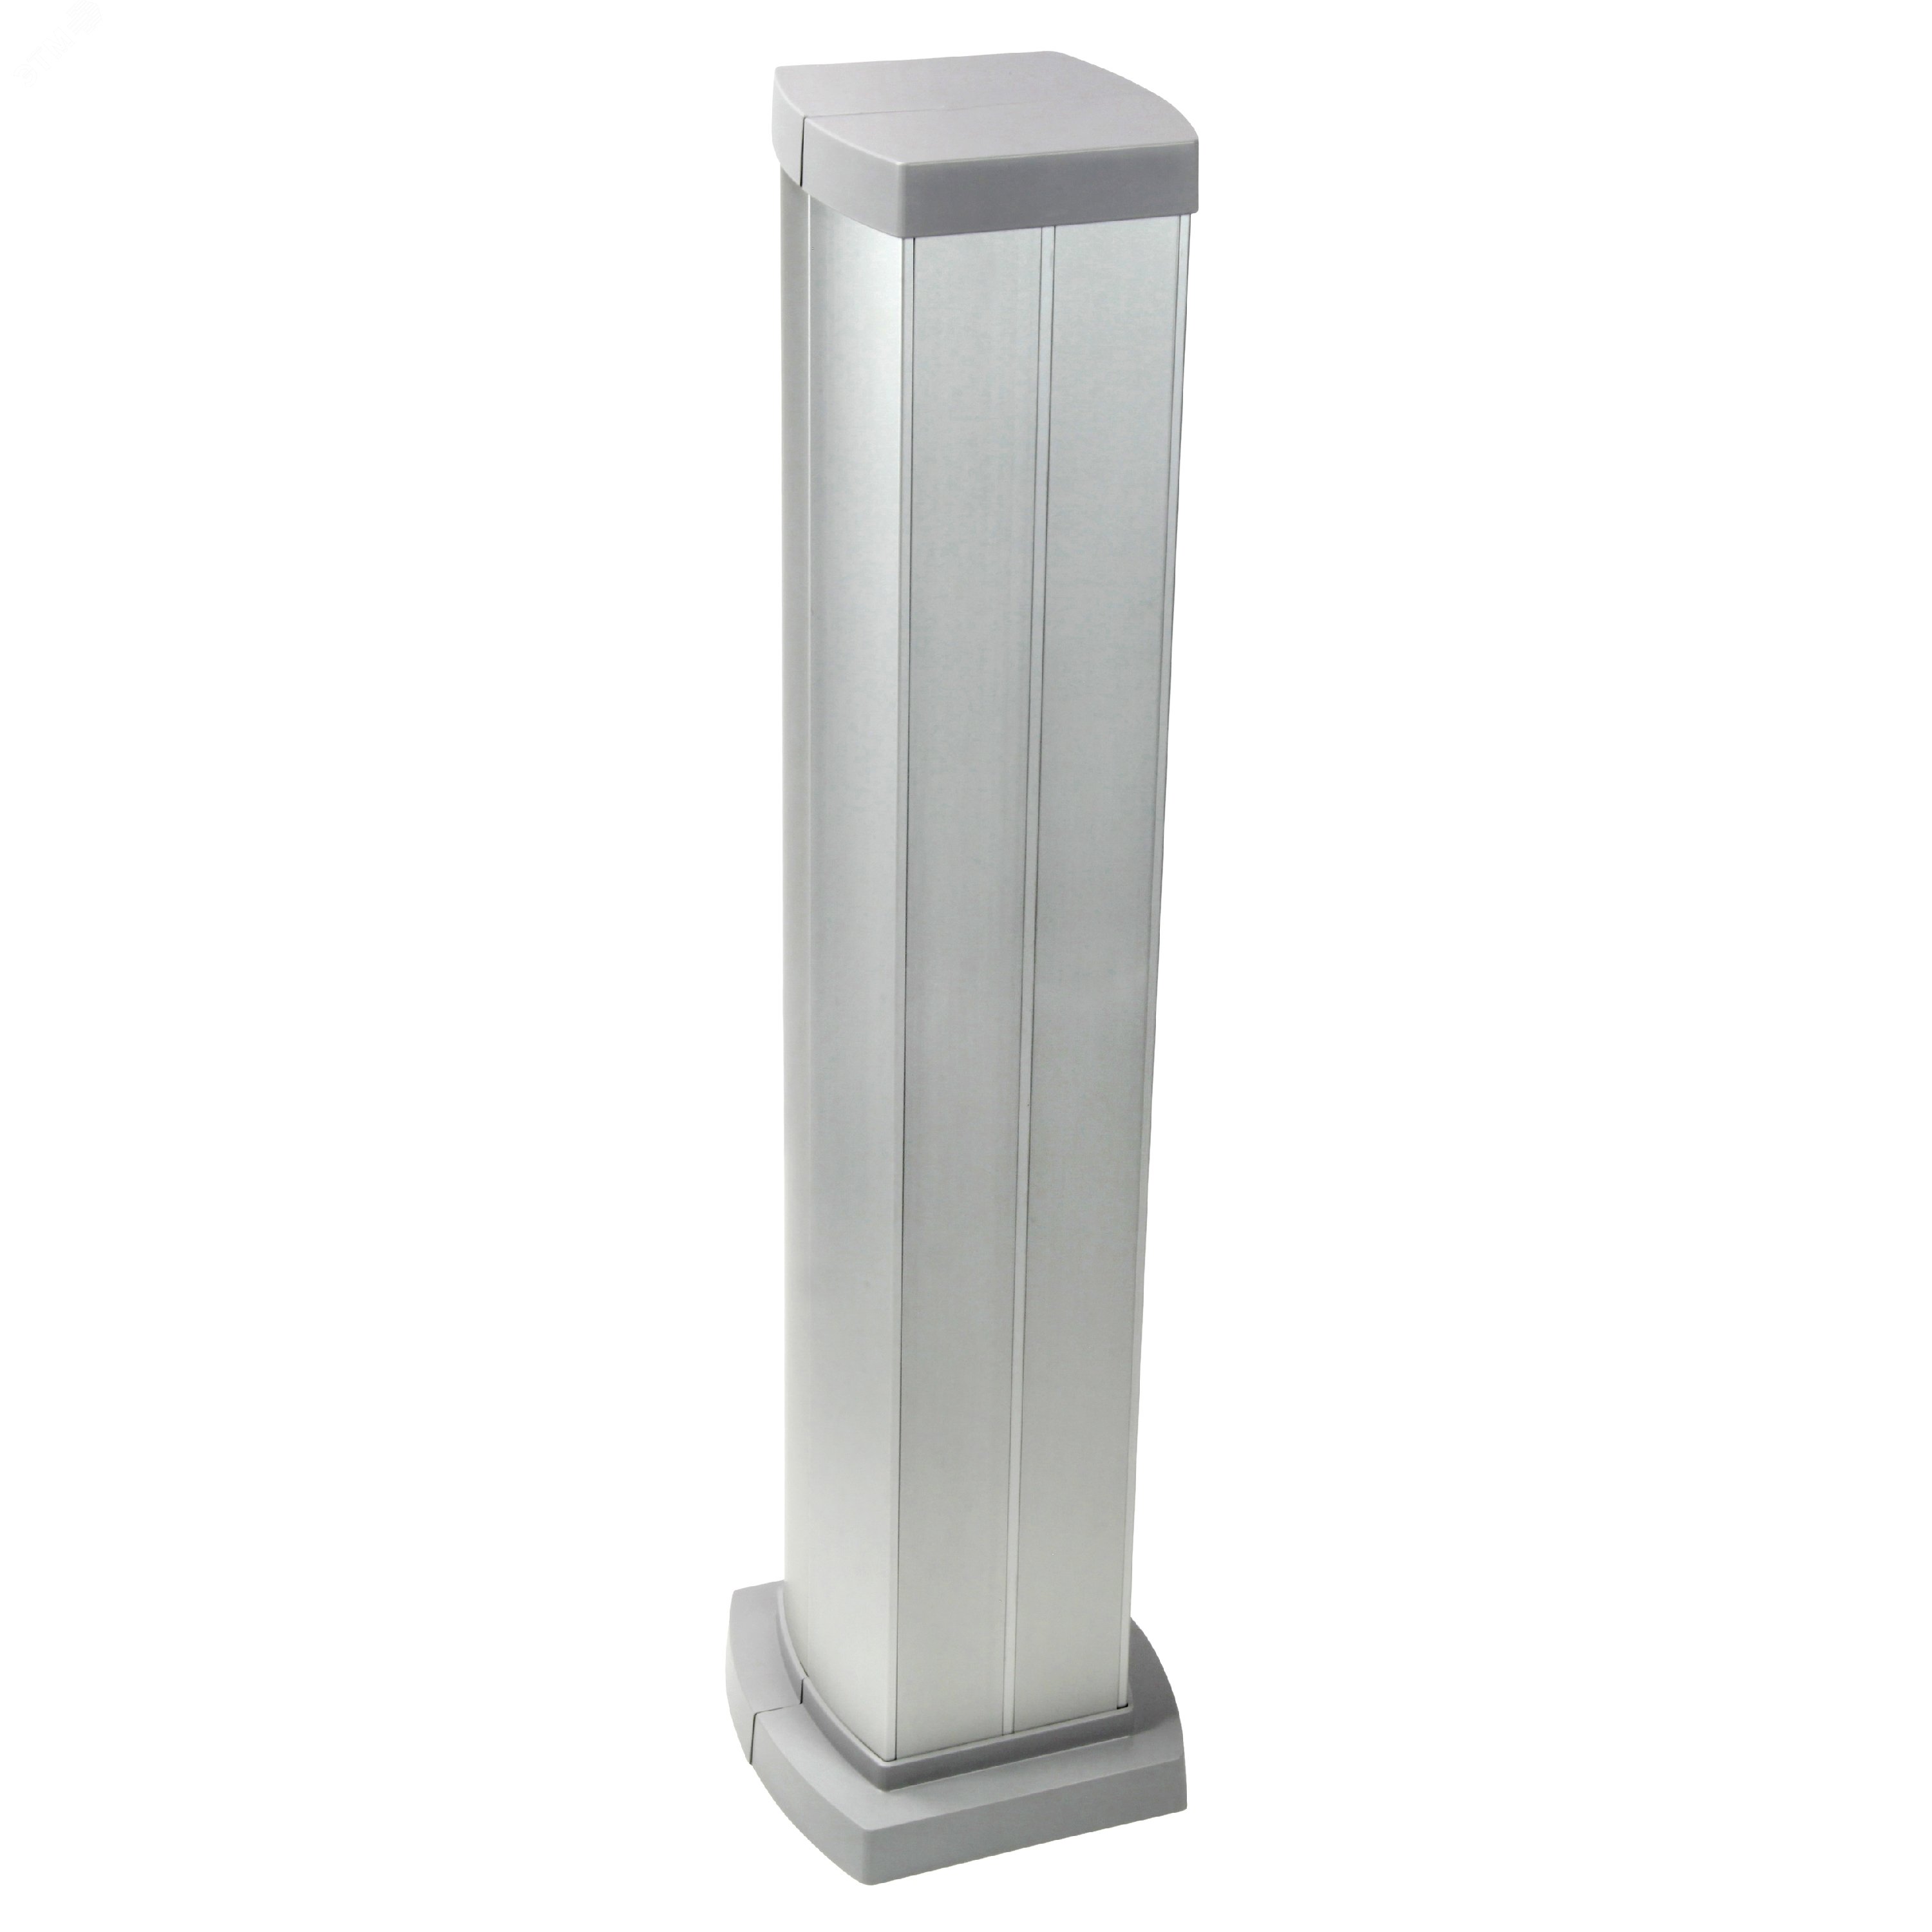 Snap-On мини-колонна алюминиевая с крышкой из алюминия 4 секции, высота 0,68 метра, цвет алюминий 653044 Legrand - превью 2